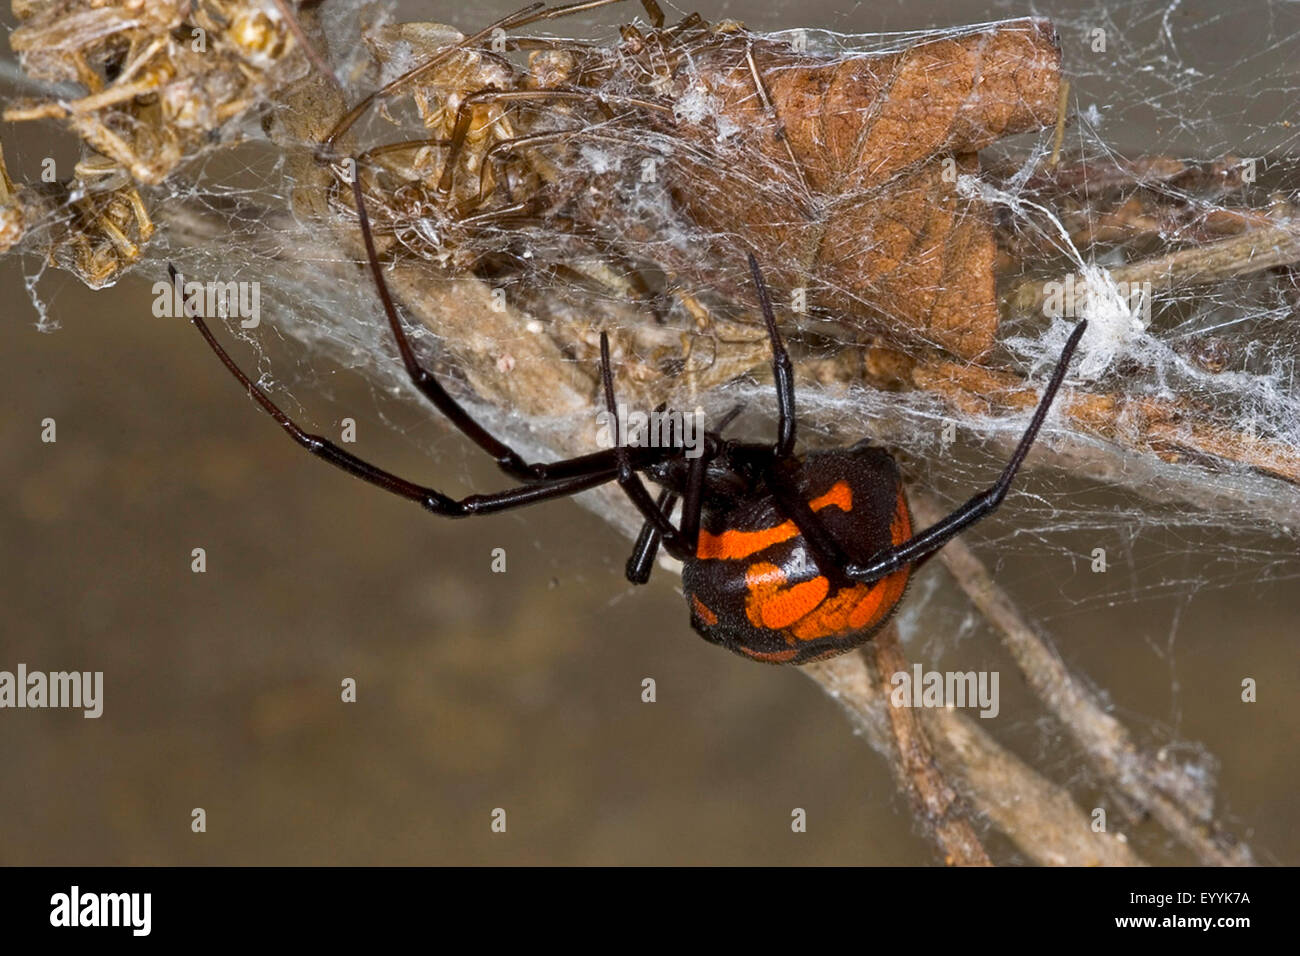 Europäische Schwarze Witwe, südliche Schwarze Witwe, Weibchen in einem Web, europäische schwarze Witwe, Malmignatte Spinne, Karakurt (Latrodectus Tredecimguttatus, Latrodectus Lugubris) Stockfoto